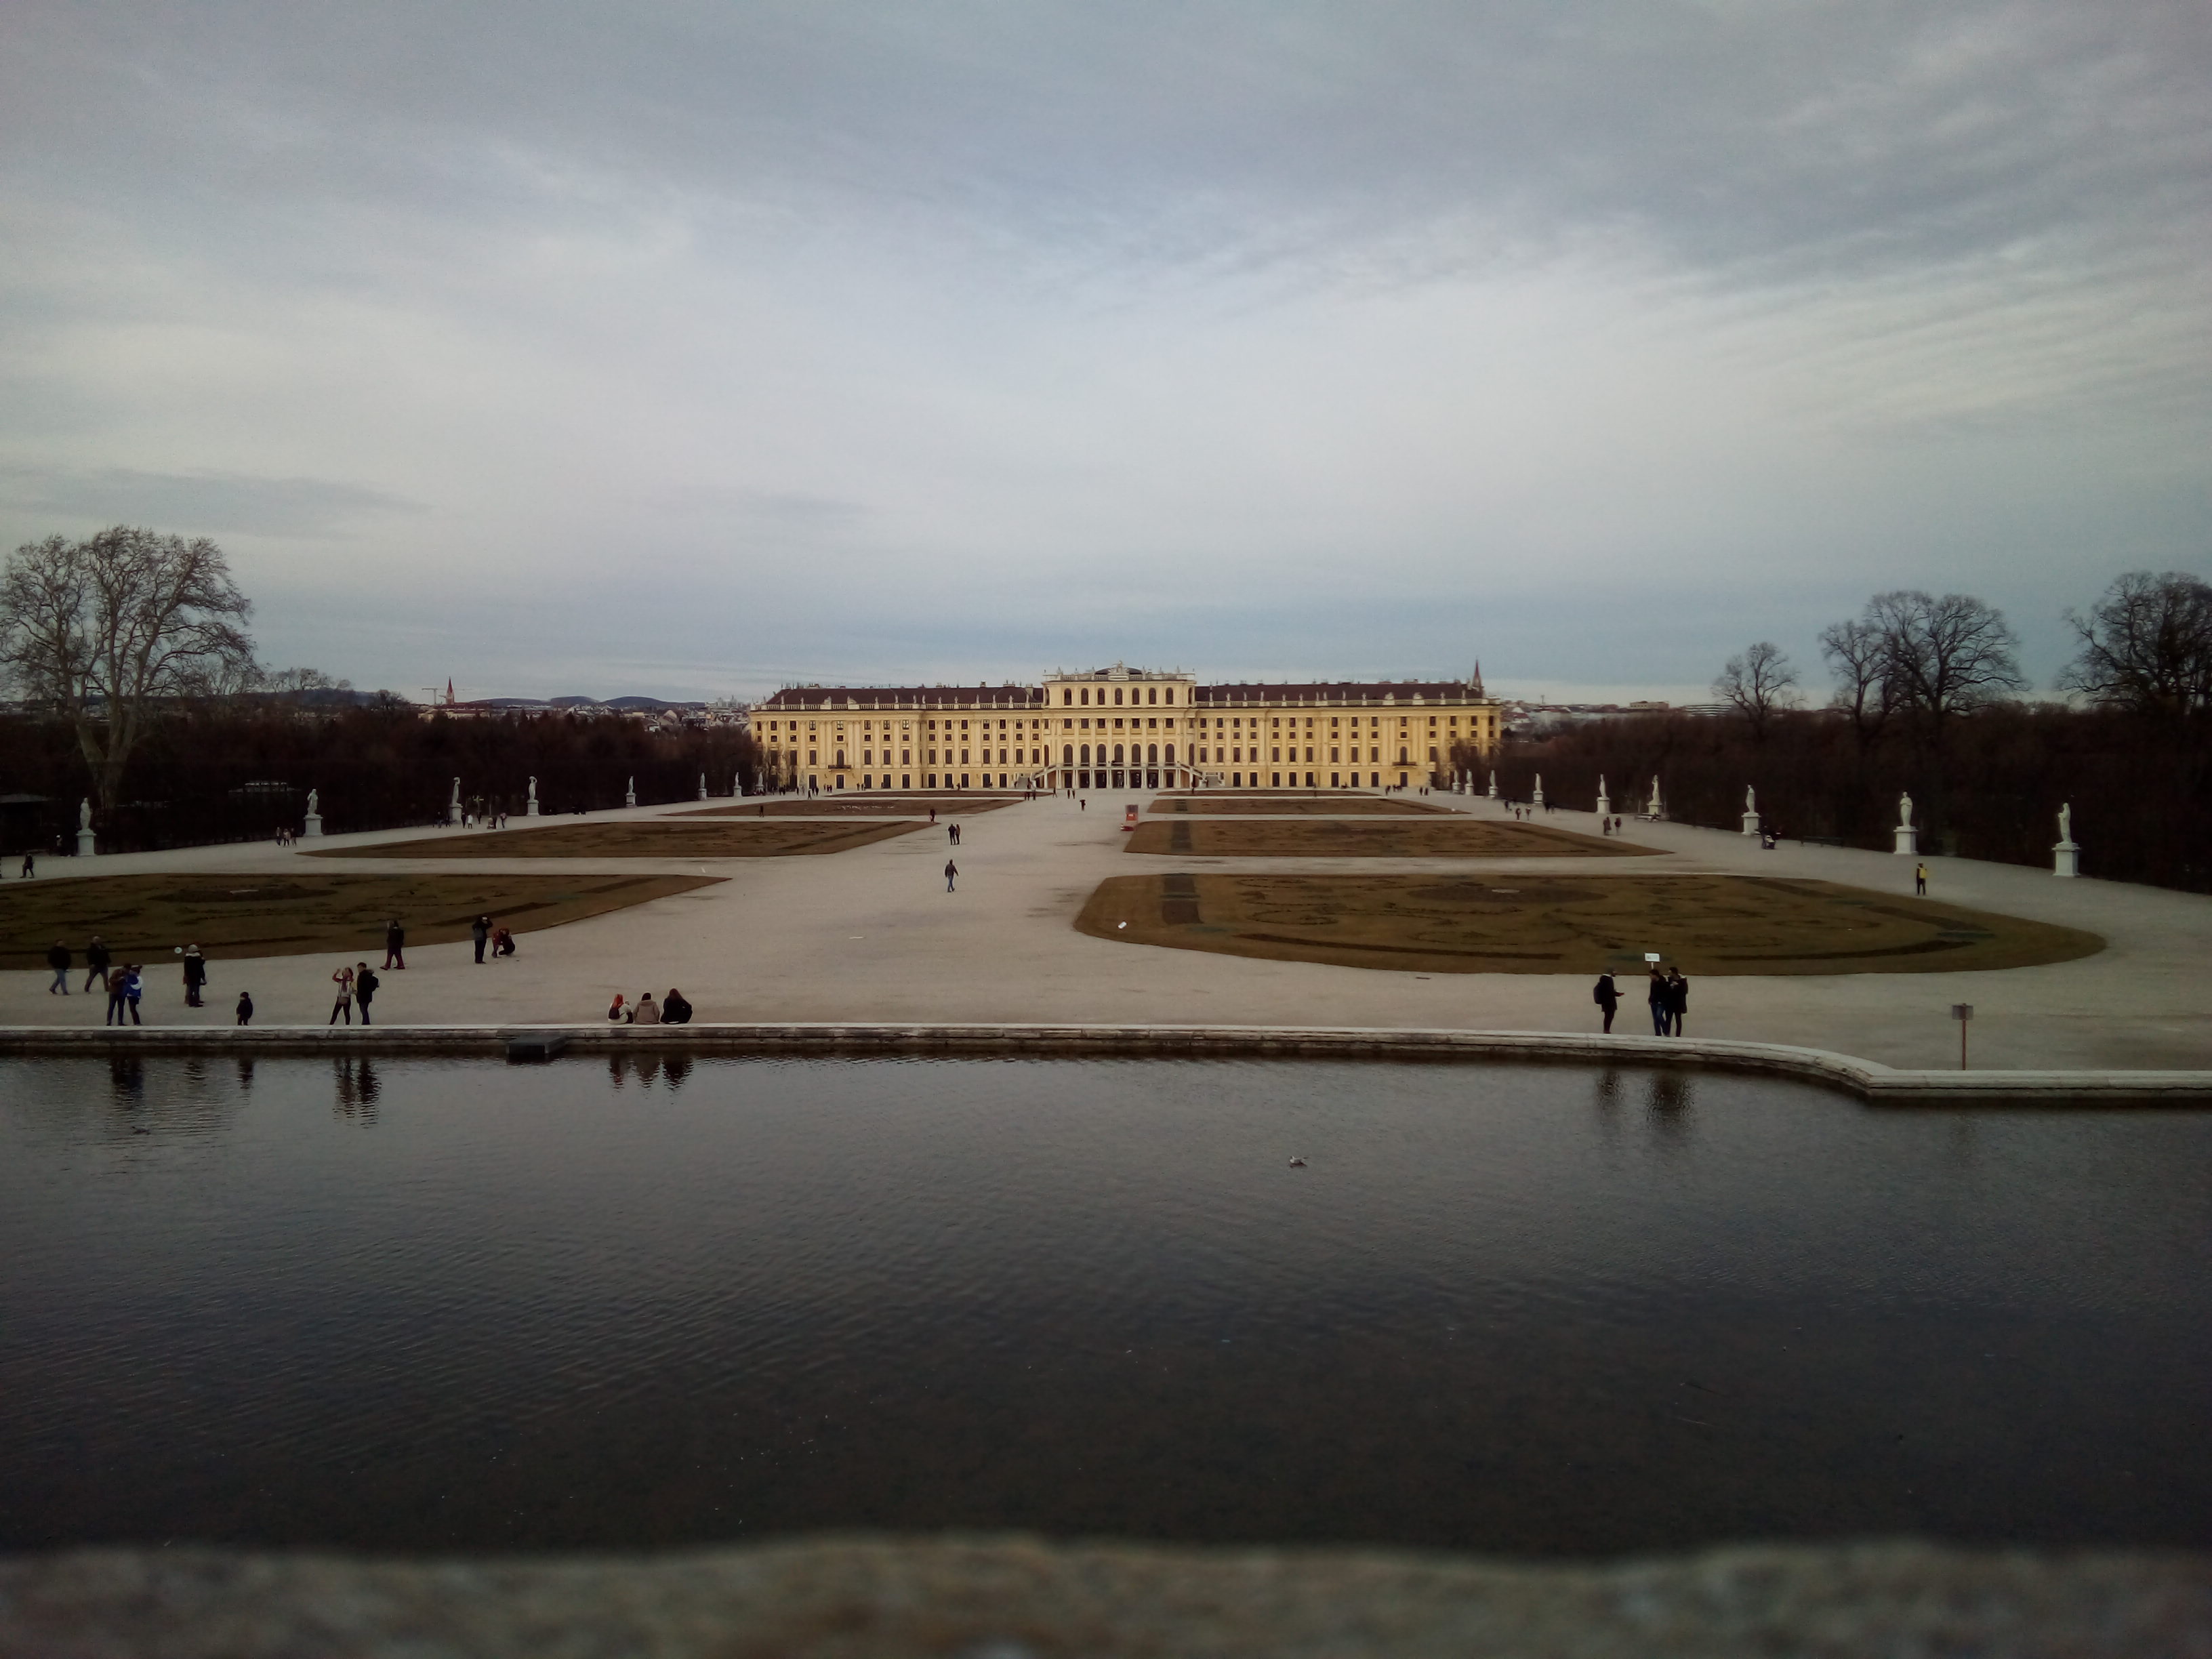 Schönbrunn Palace viewed from Neptune's Fountain